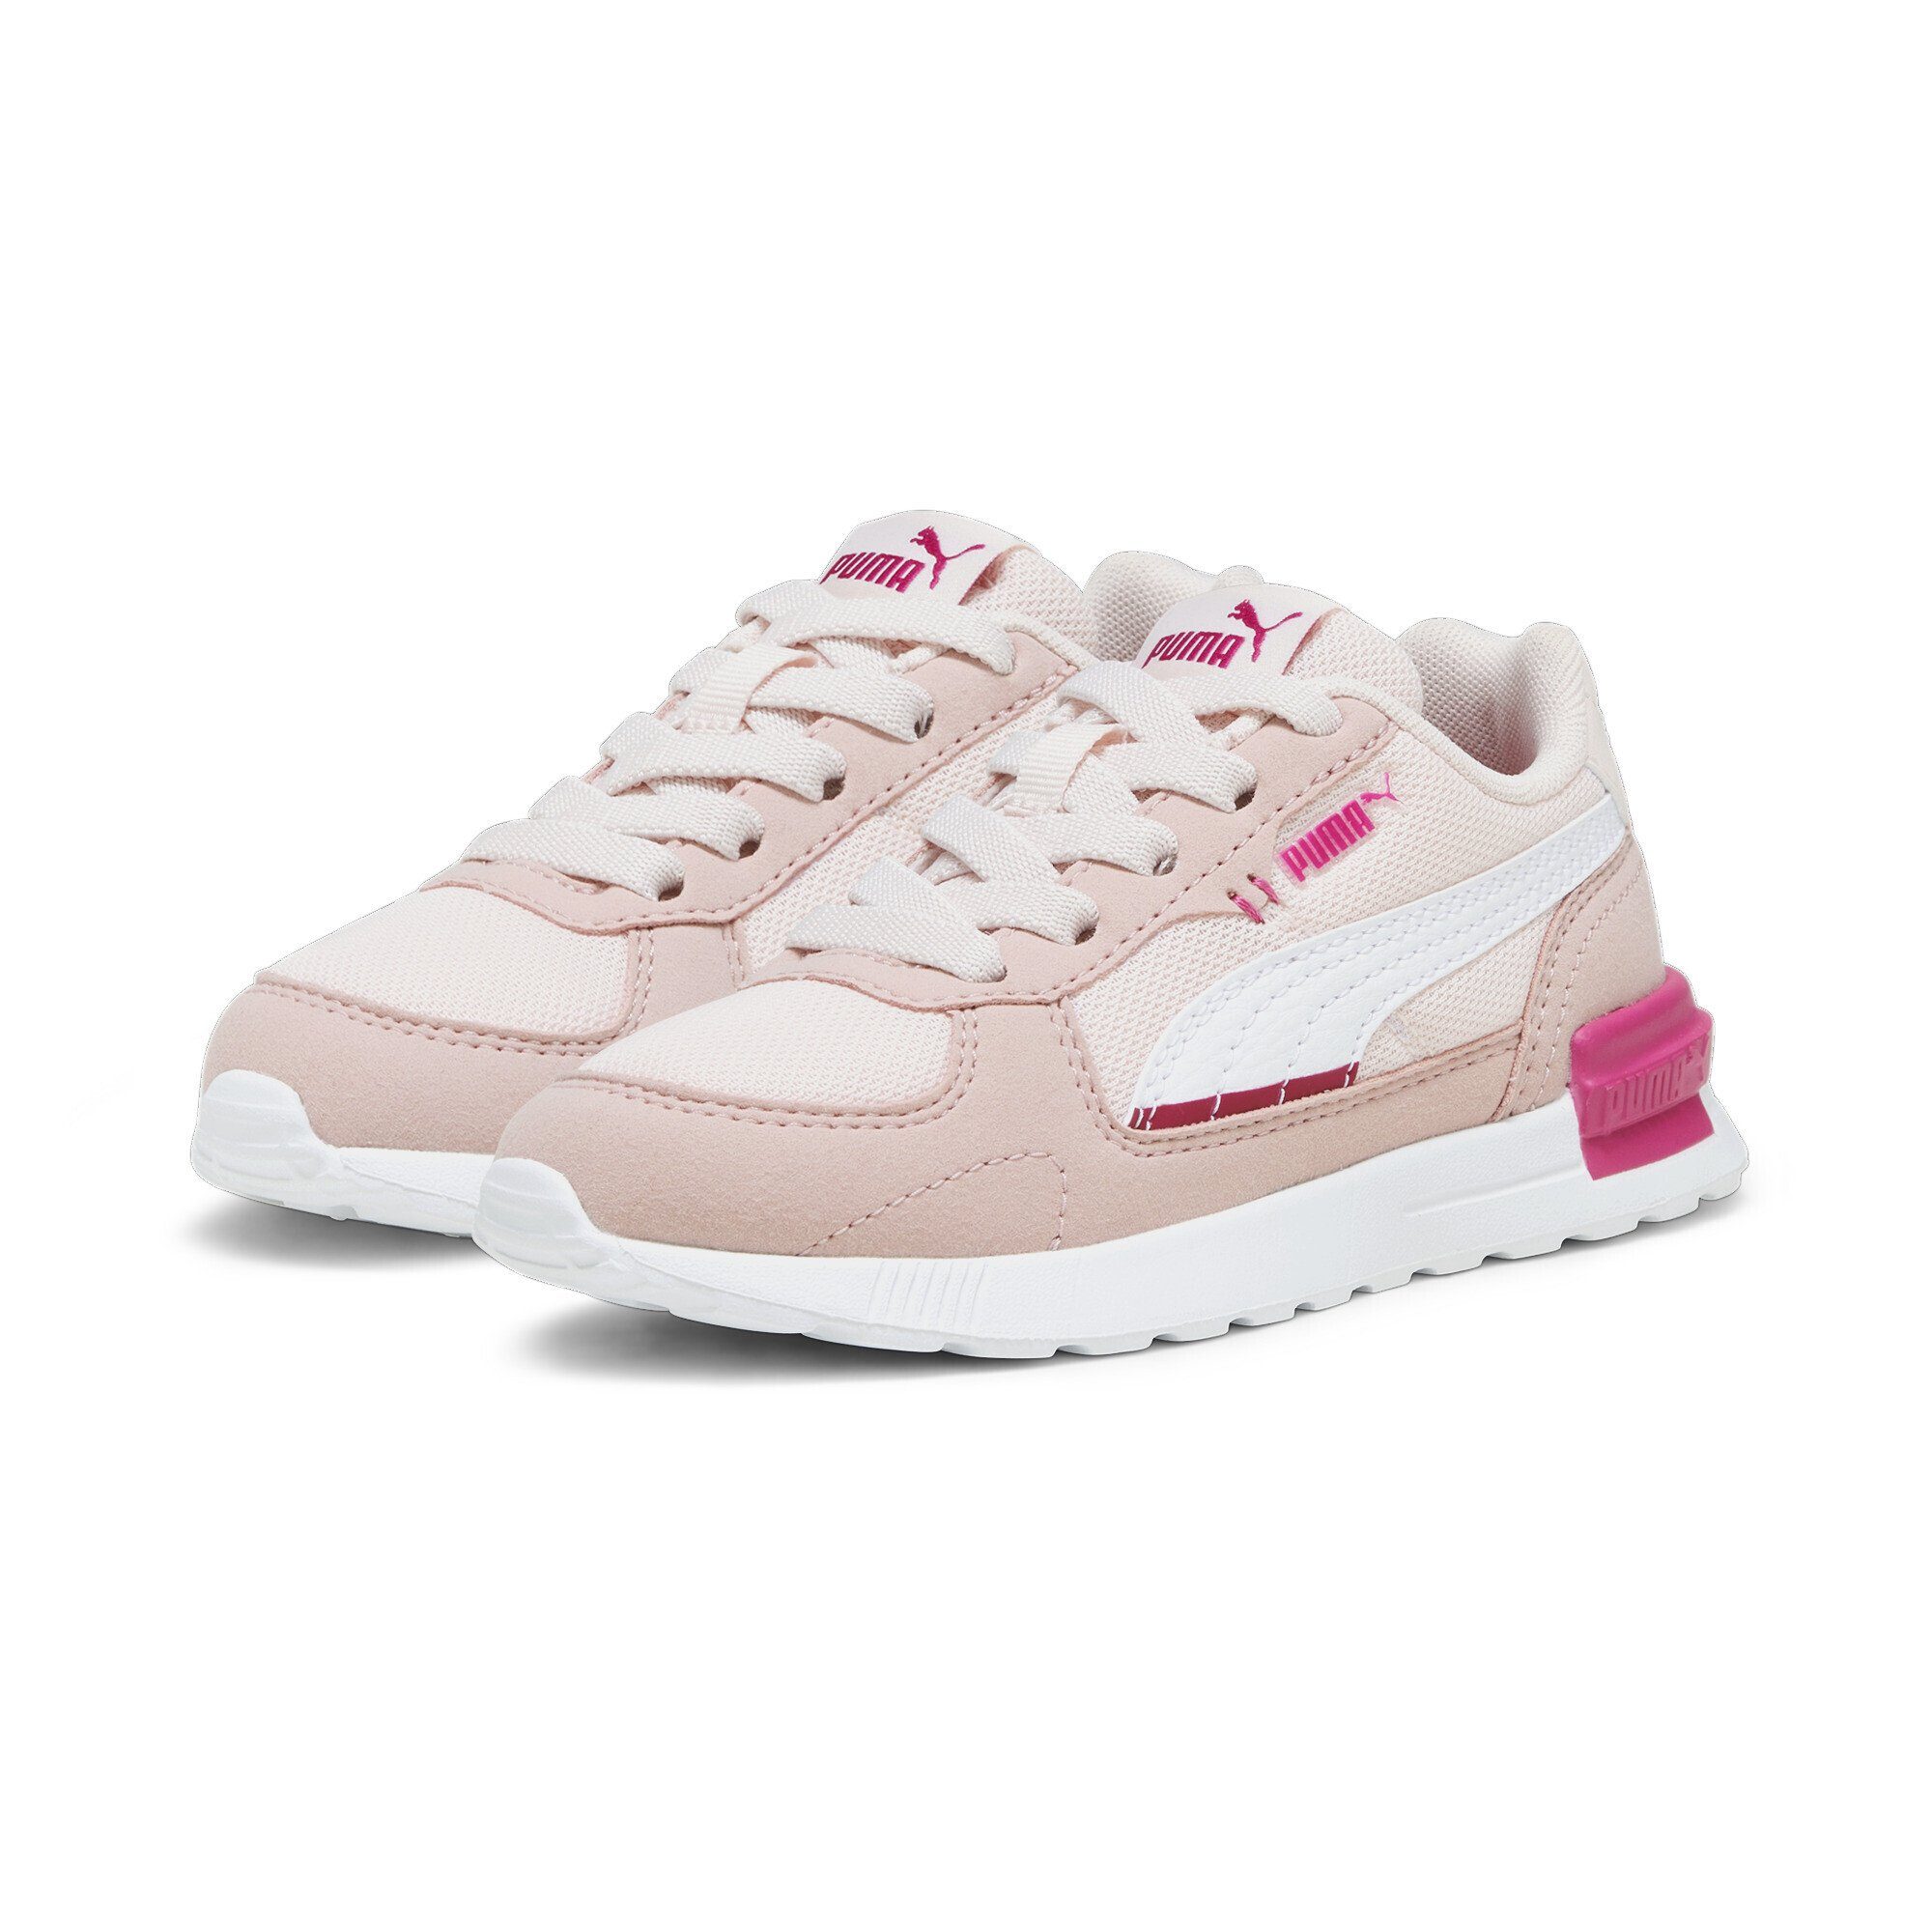 [Wir haben eine große Menge] PUMA Graviton AC Sneaker White Pinktastic Pink Future Frosty Jugendliche Sneaker